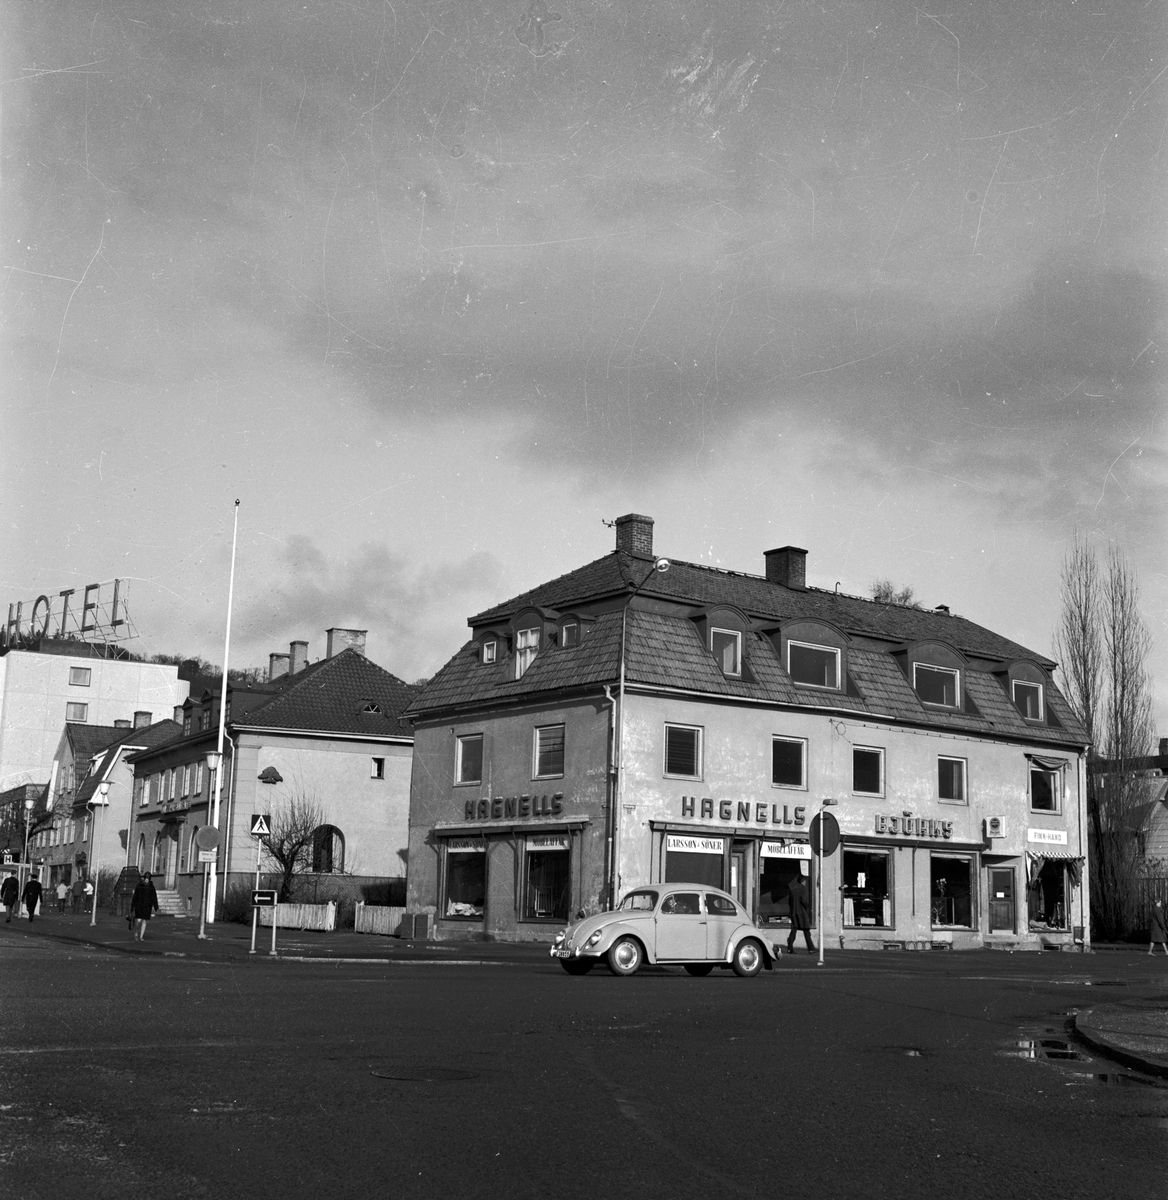 Vid korsningen Jönköpingsvägen 22 och Kungsgatan i Huskvarna ligger ett hus med affärer, Larsson & söner möbelaffär, Björks konditori och Finn-hand som sålde finsk hemslöjd.